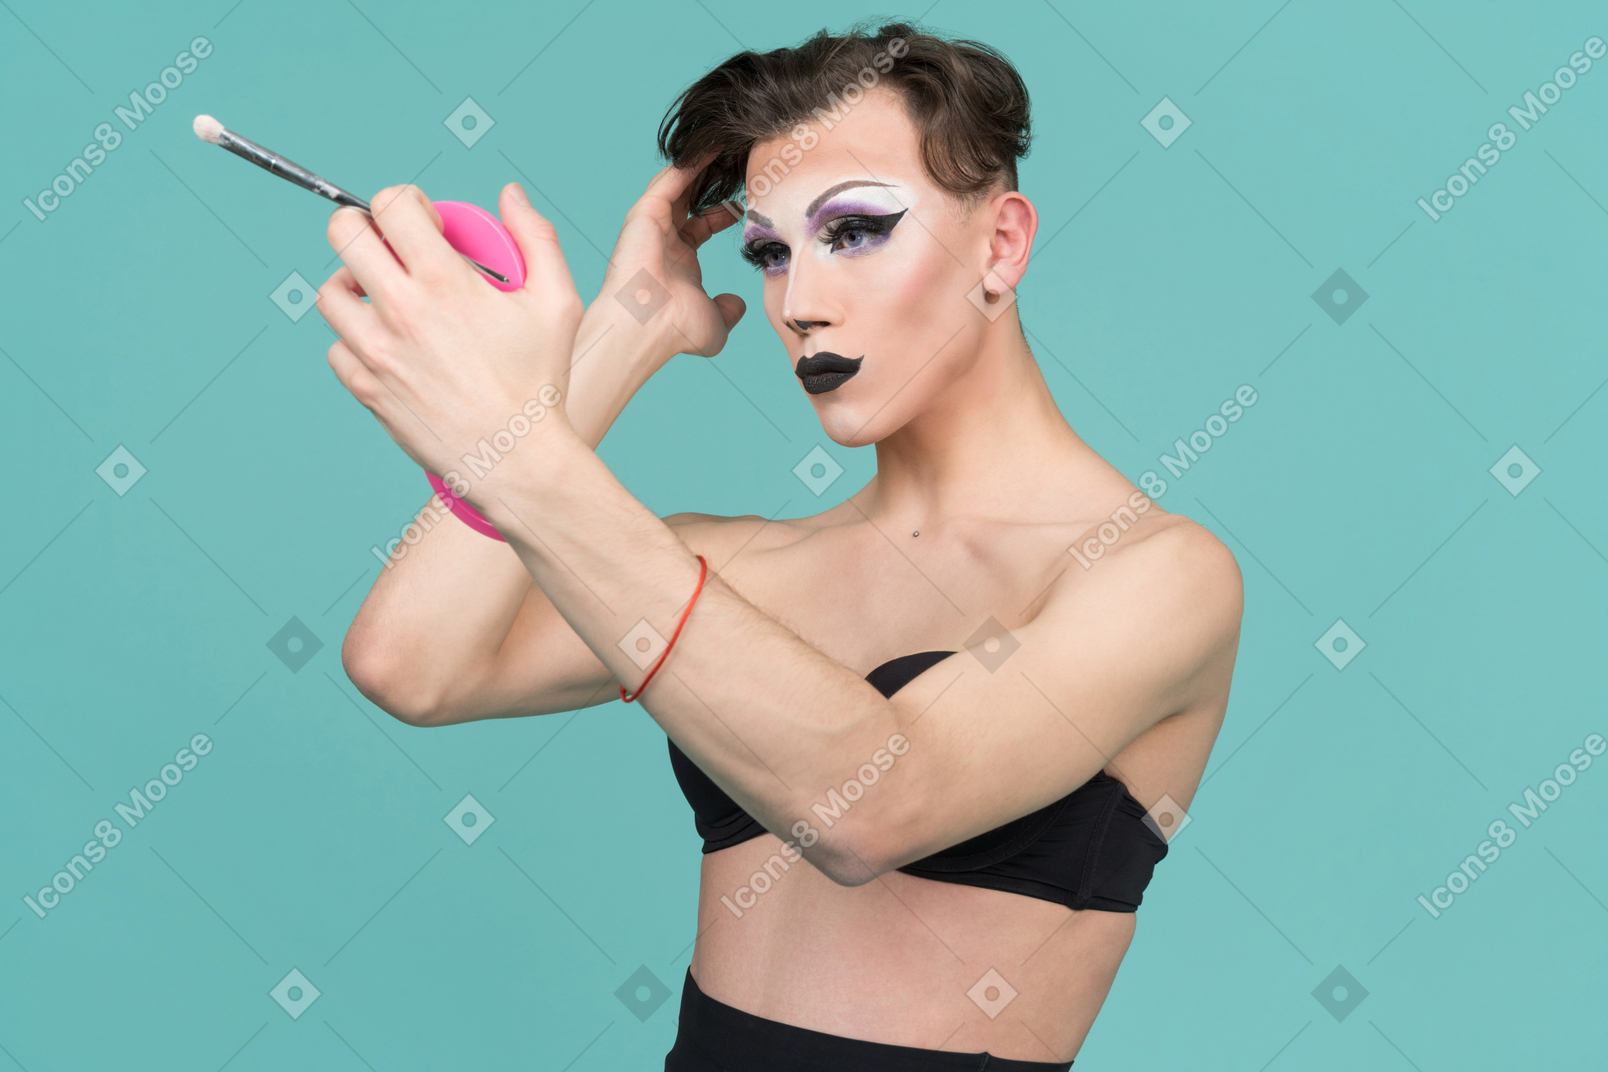 Трансвестит поправляет прическу, глядя в зеркало